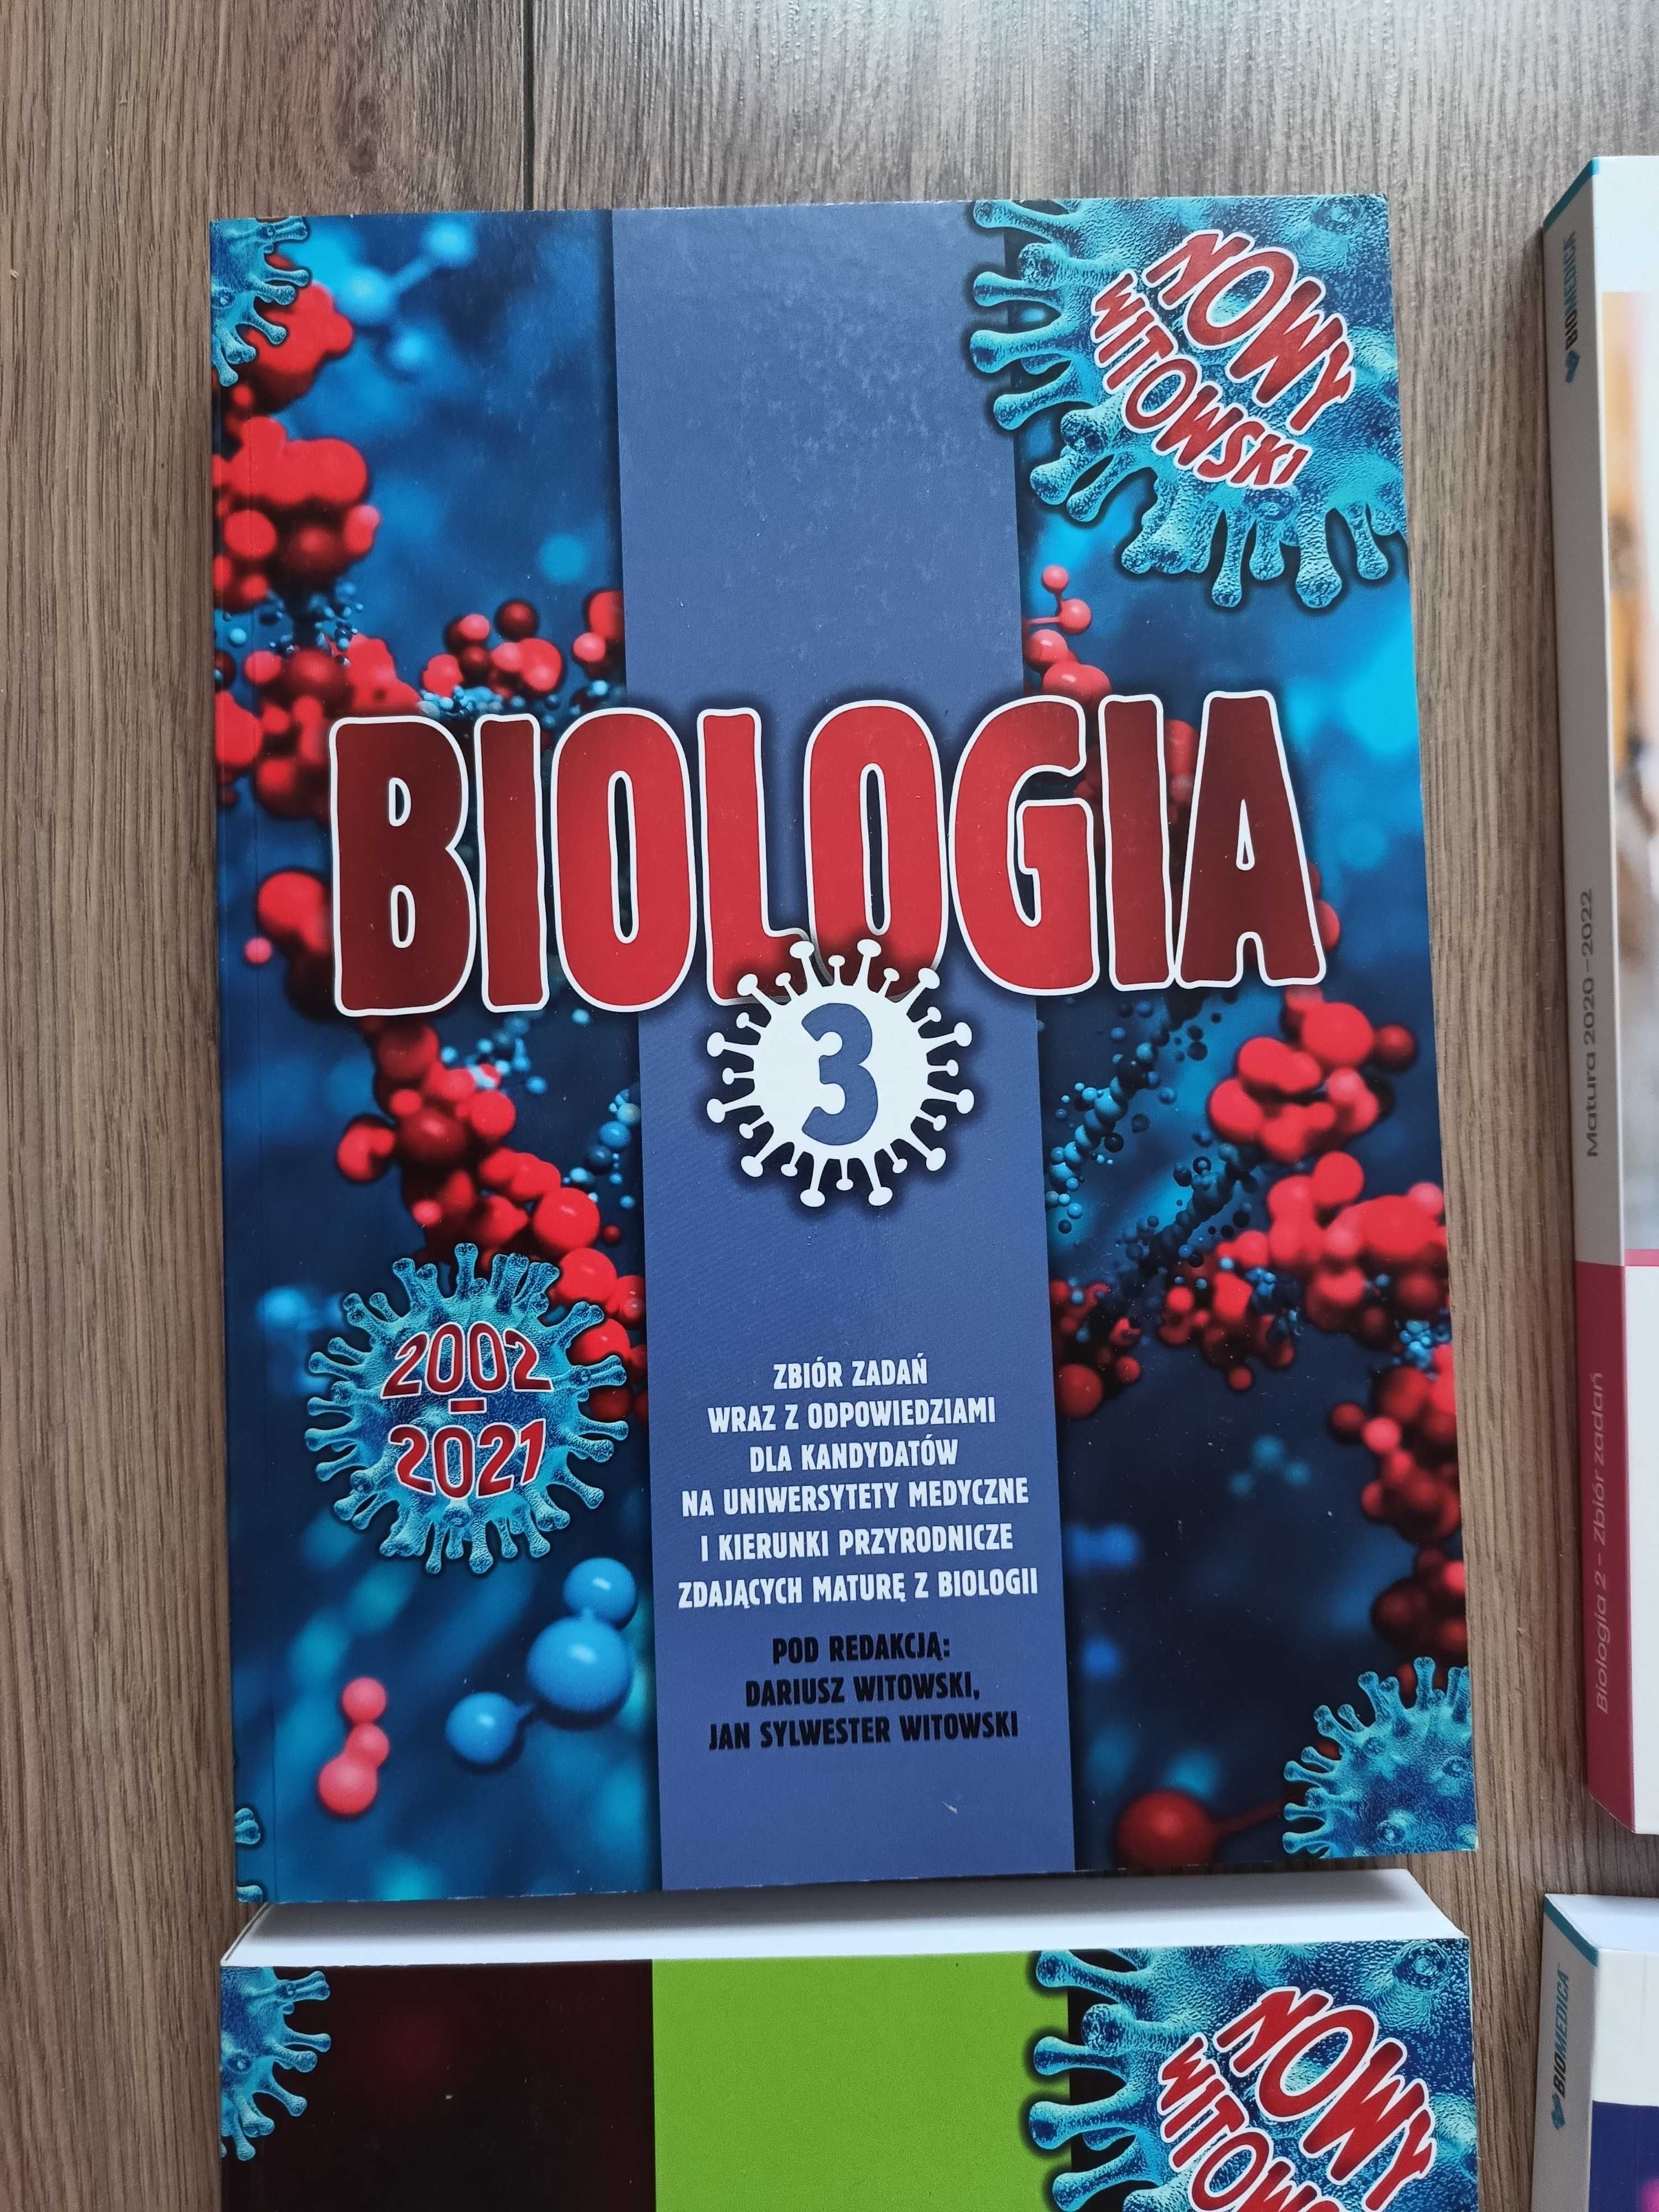 Matura zbiór Witowski cz.3 - Genetyka itd, Biologia rozszerzona